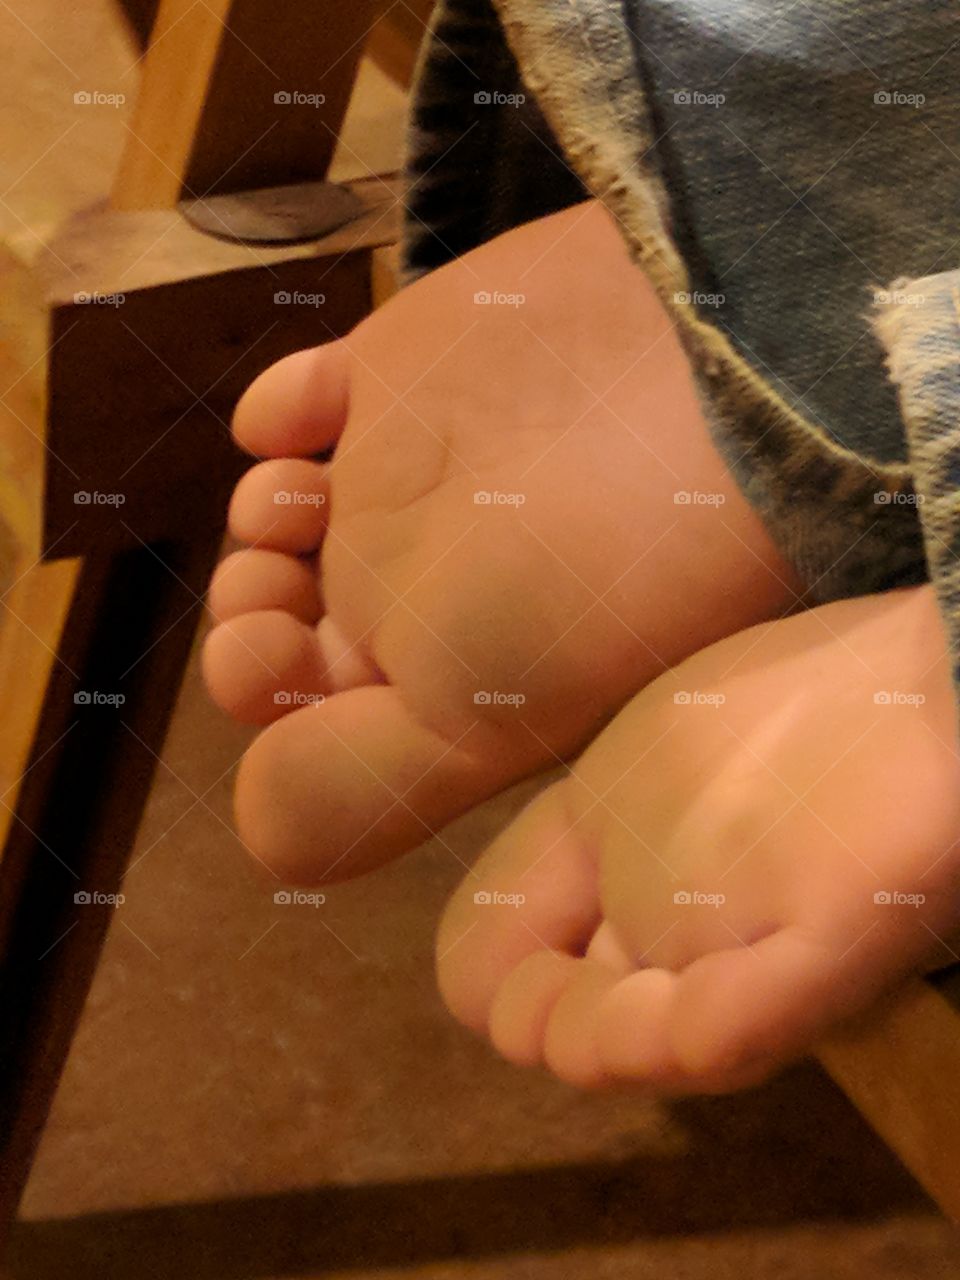 Dirty little feet